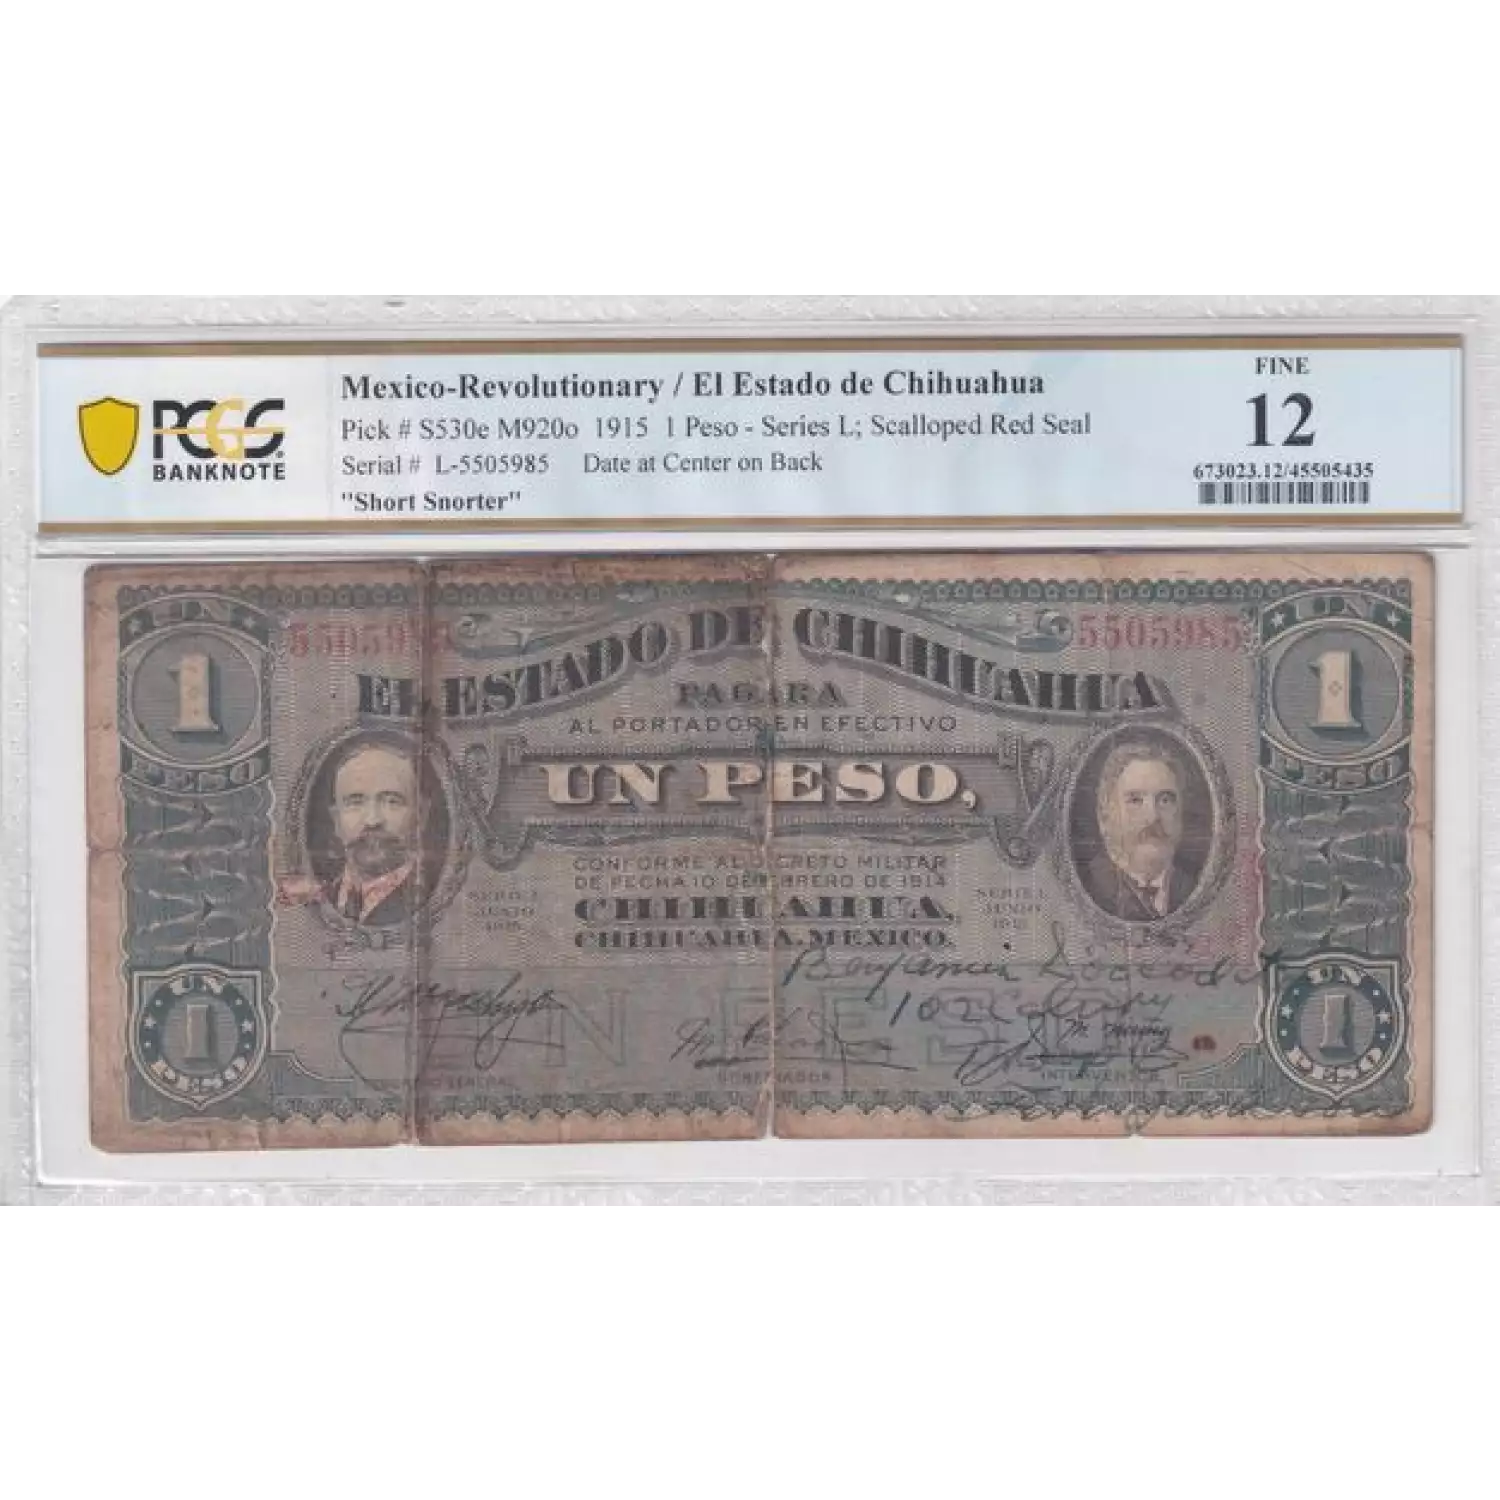 1 Peso 5631, DECRETO 10.2.1914  Mexico - Revolutionary S530 (2)